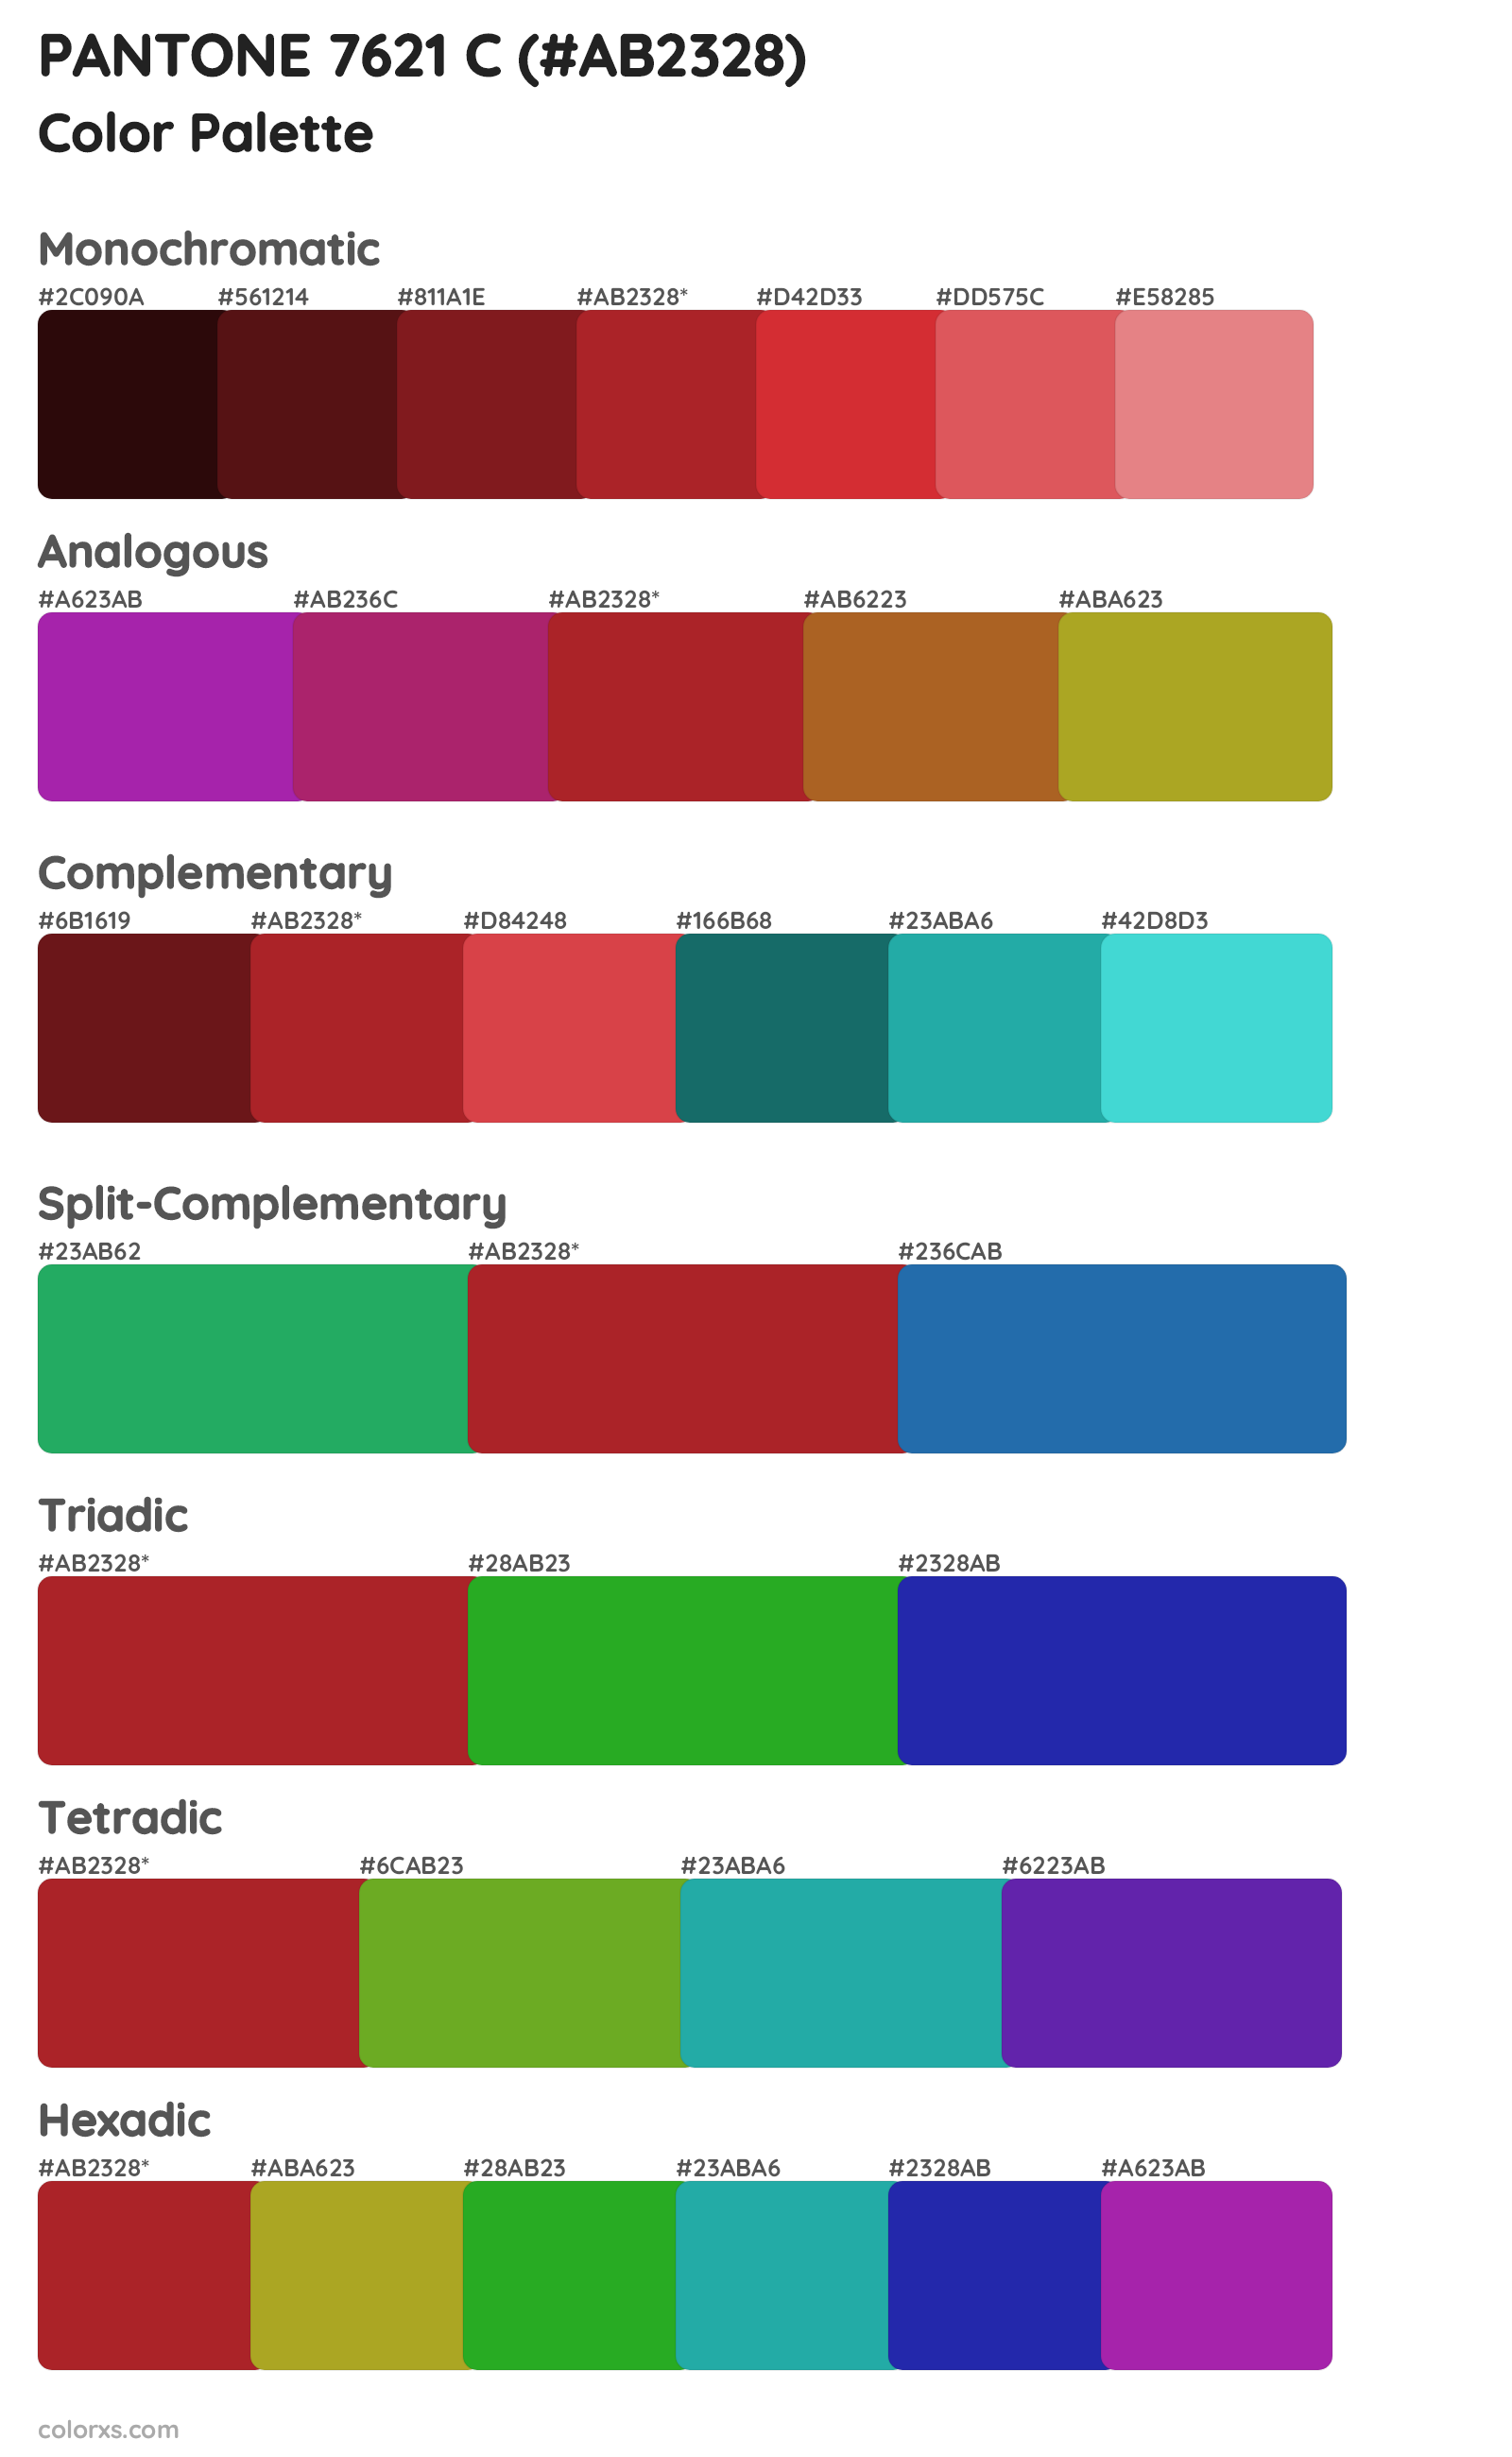 PANTONE 7621 C Color Scheme Palettes